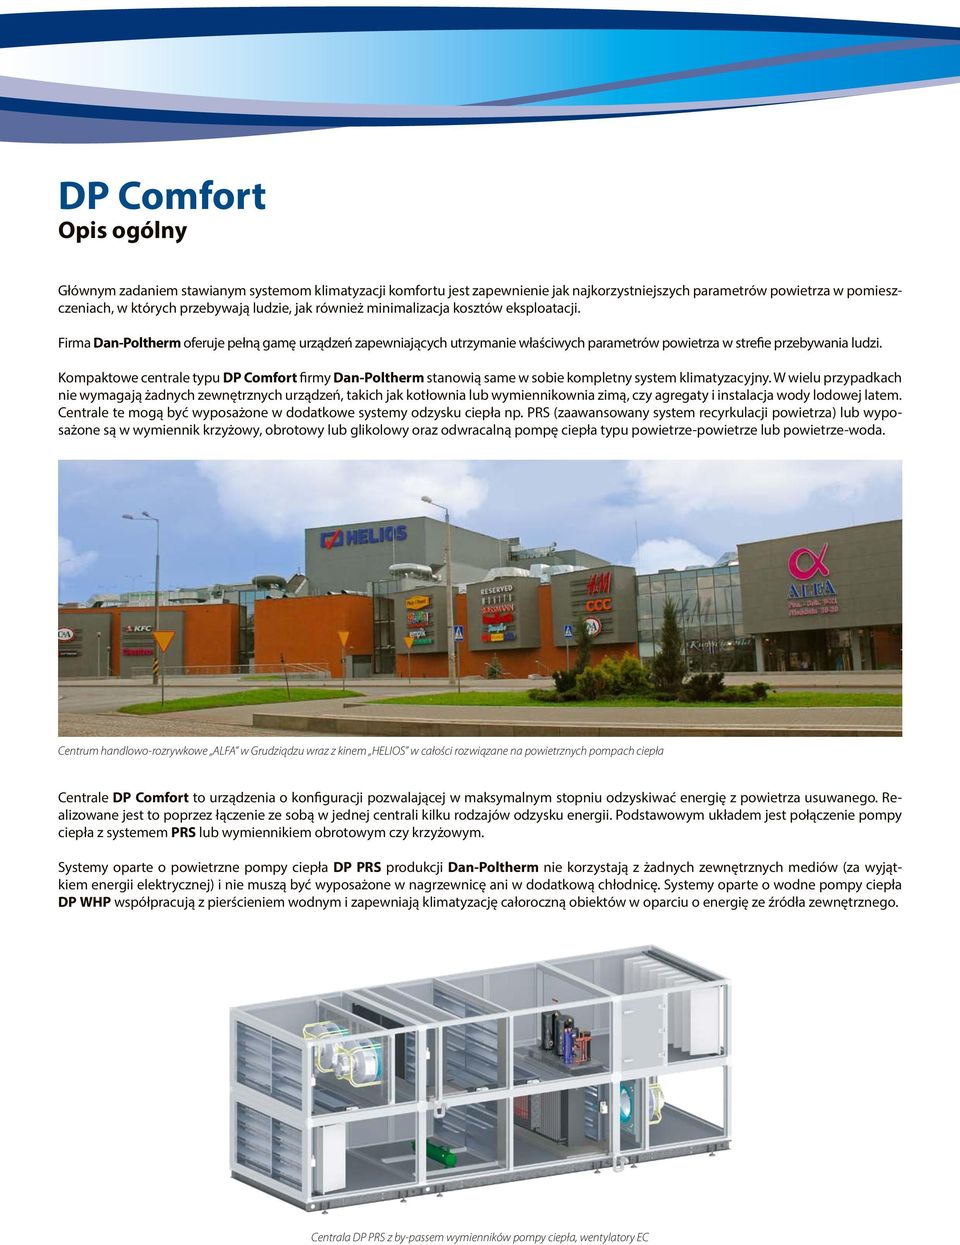 Kompaktowe centrale typu DP Comfort firmy Dan-Poltherm stanowią same w sobie kompletny system klimatyzacyjny.